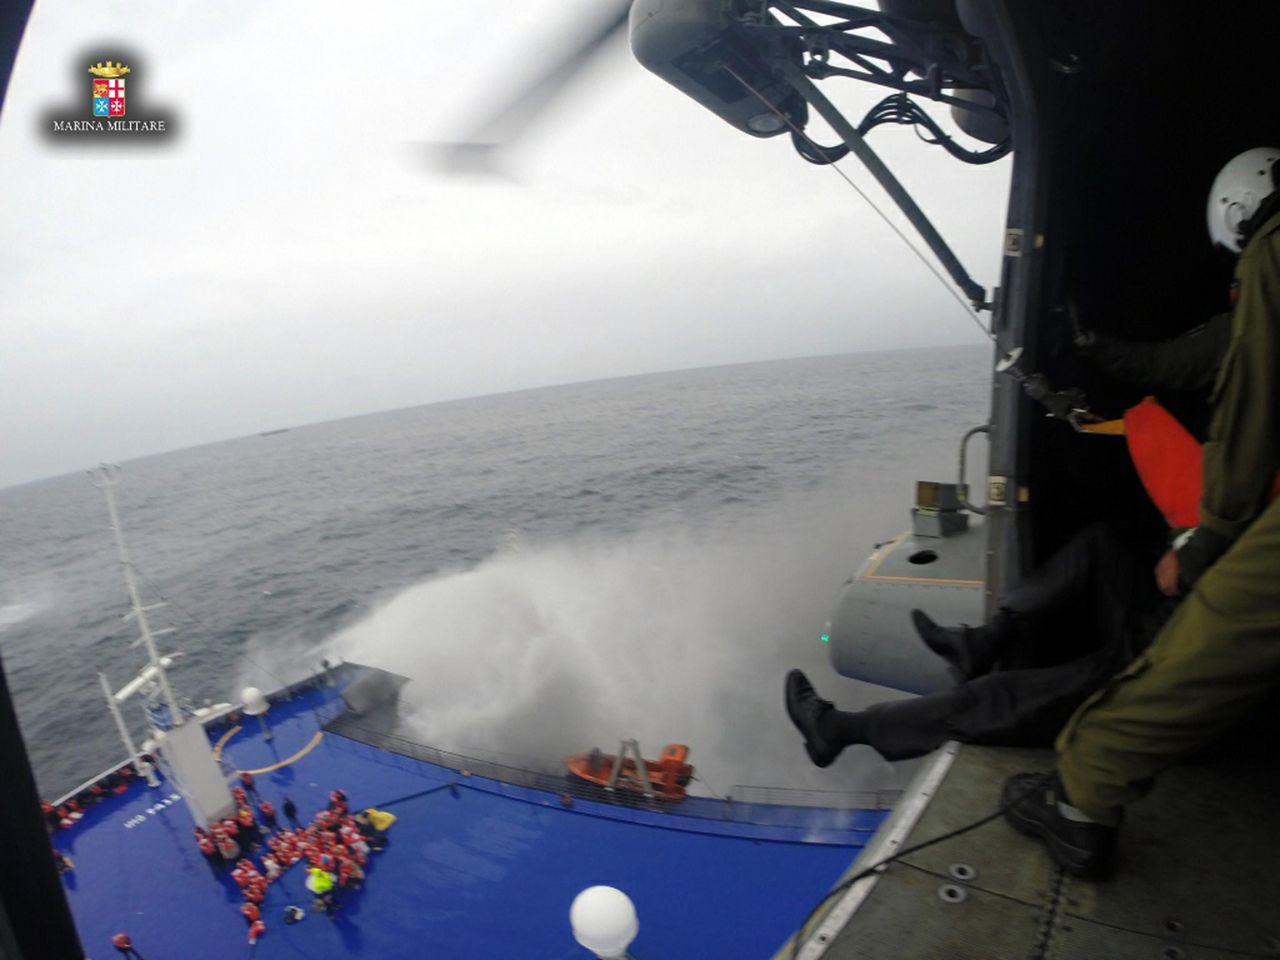 De Italiaanse marine haalt met helikopters mensen van de veerboot. De weersomstandigheden zijn ruw op zee.